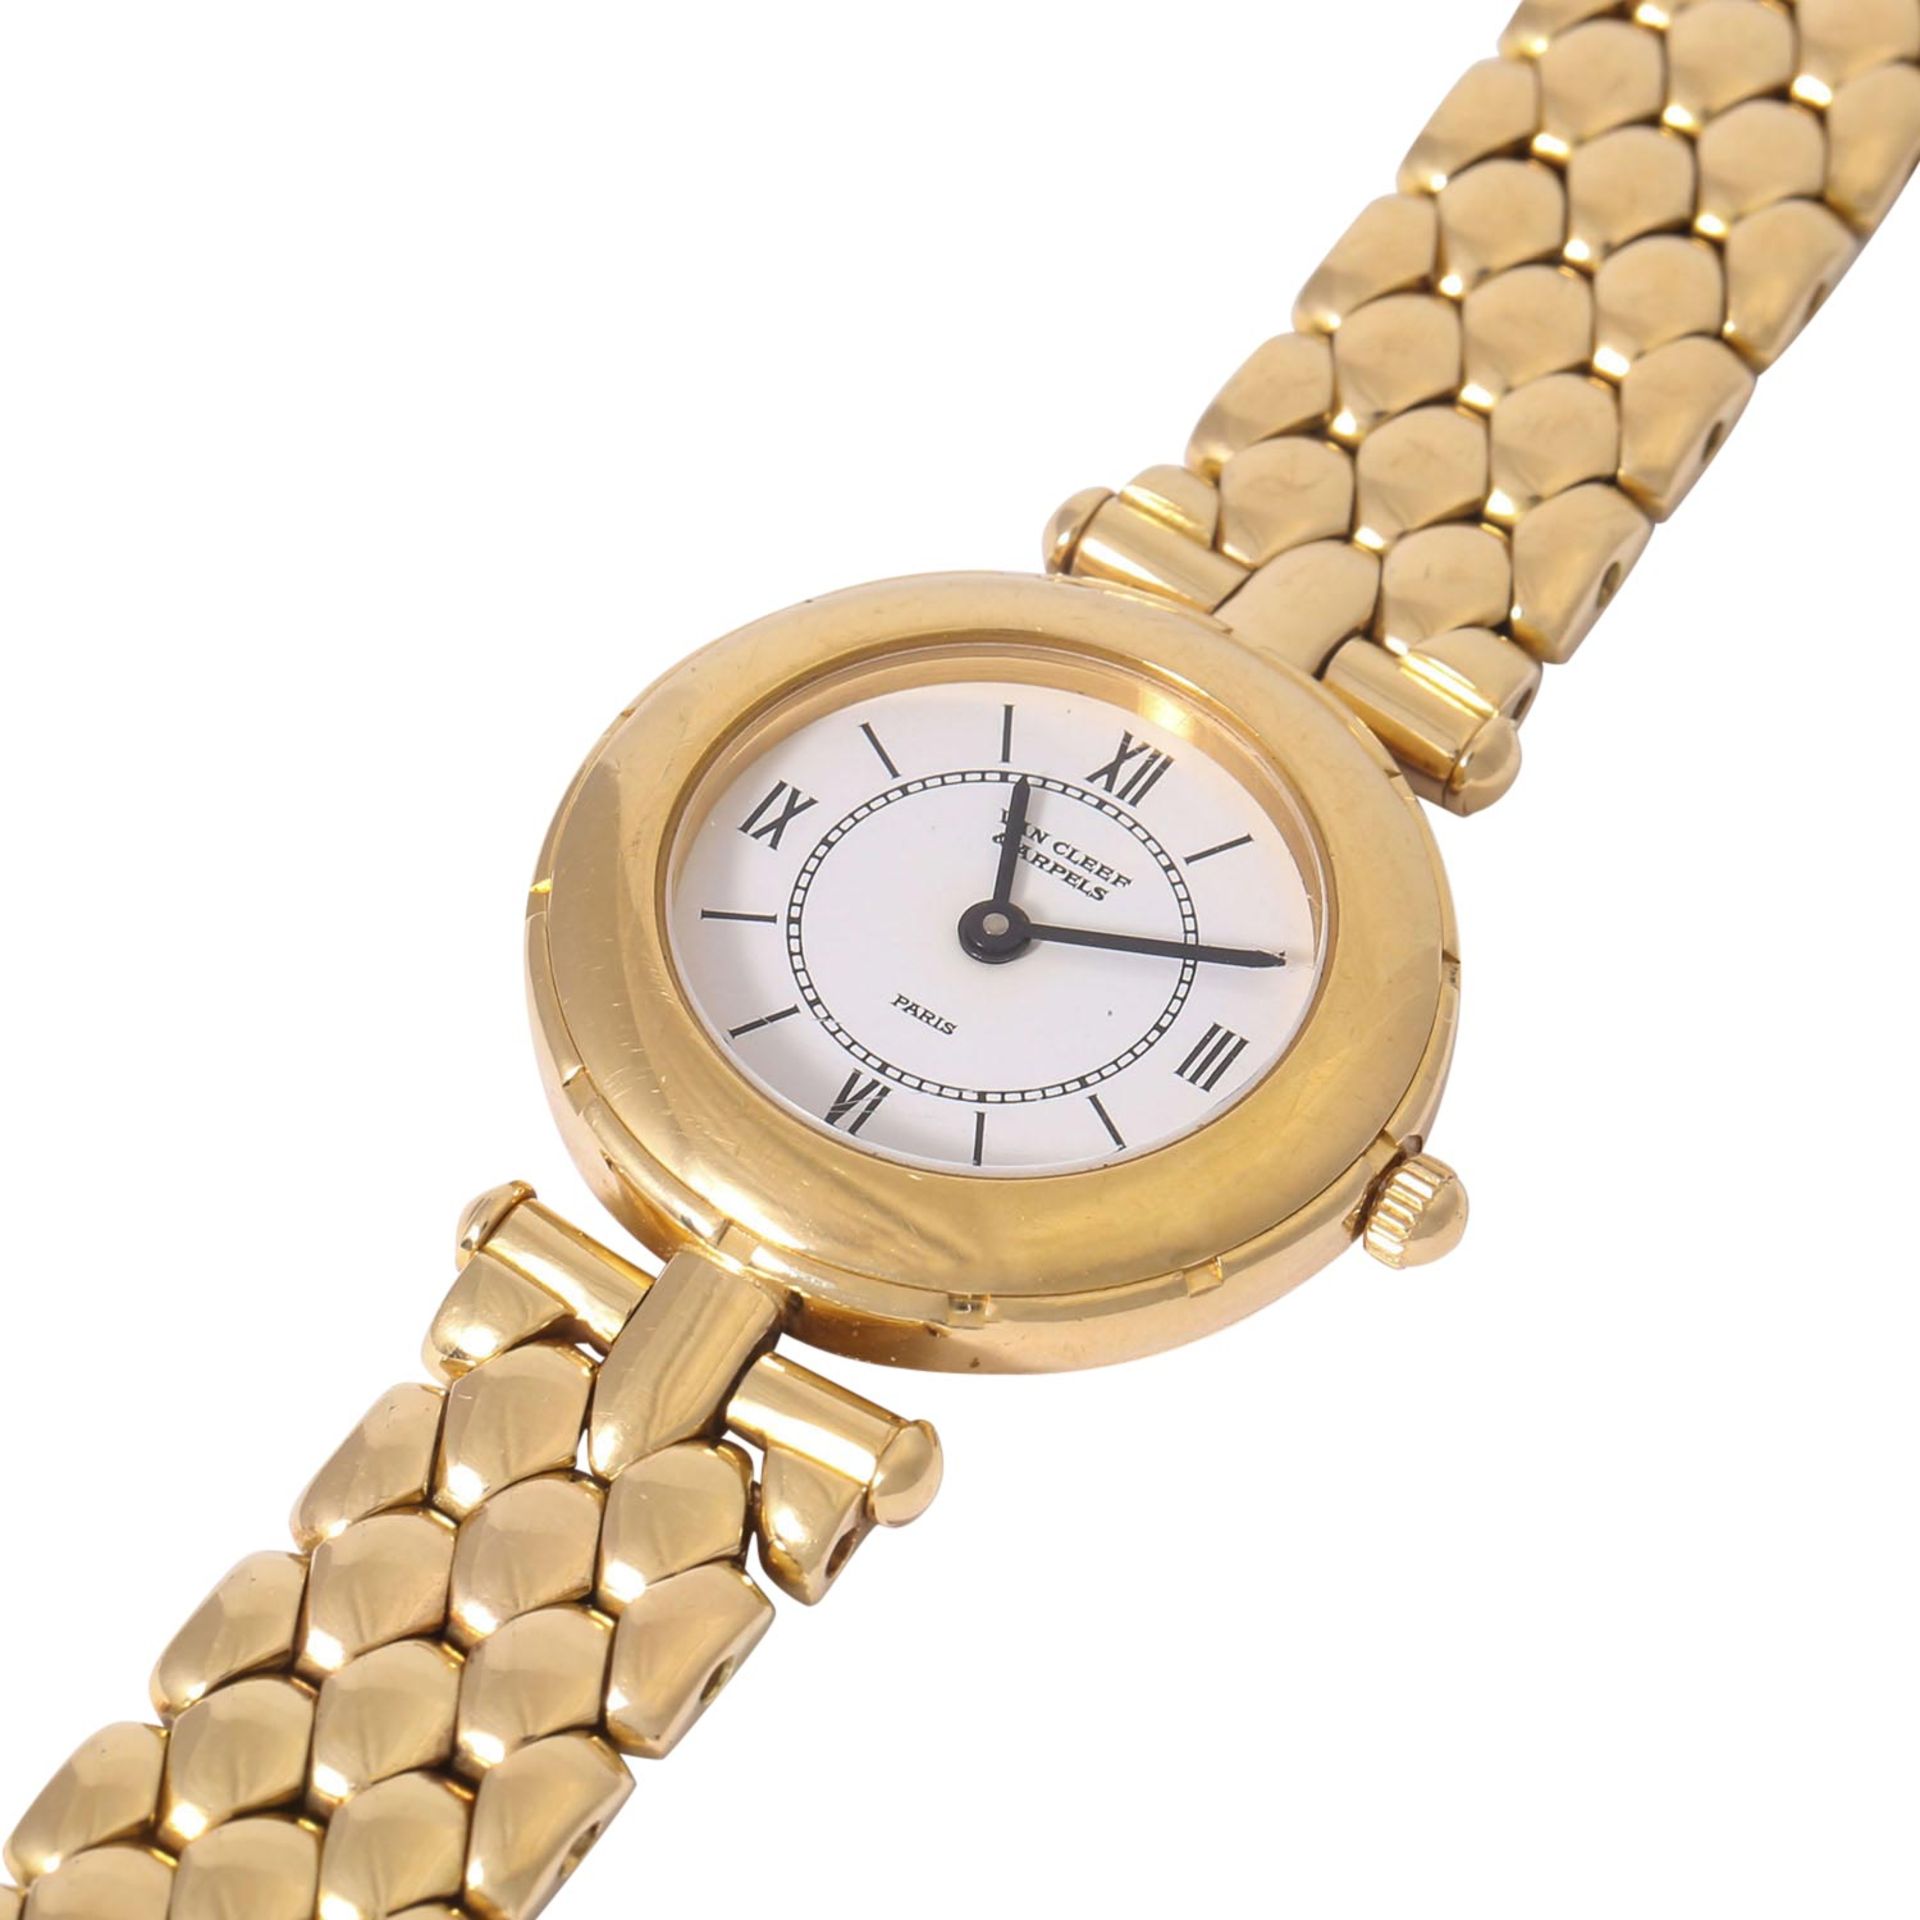 VAN CLEEF & ARPELS hochfeine Damen Armbanduhr, Ref. 13607. Ca. 1990er Jahre. - Bild 5 aus 8